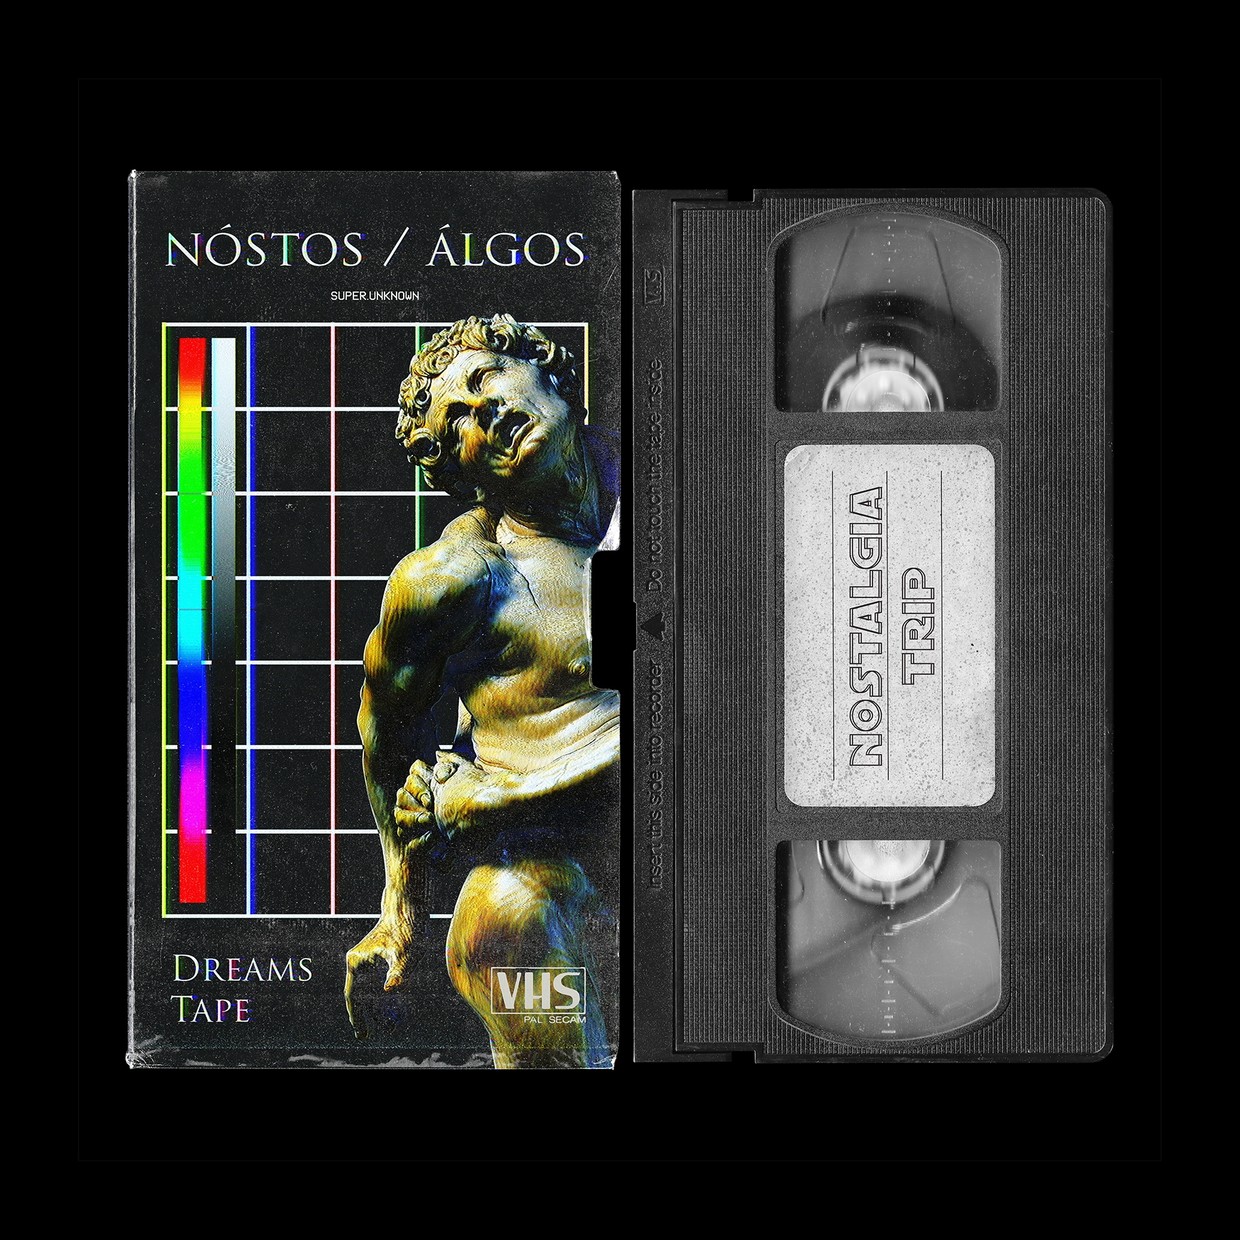 复古老物件VHS录像带磁带封面设计贴图样机模板 VHS Ta